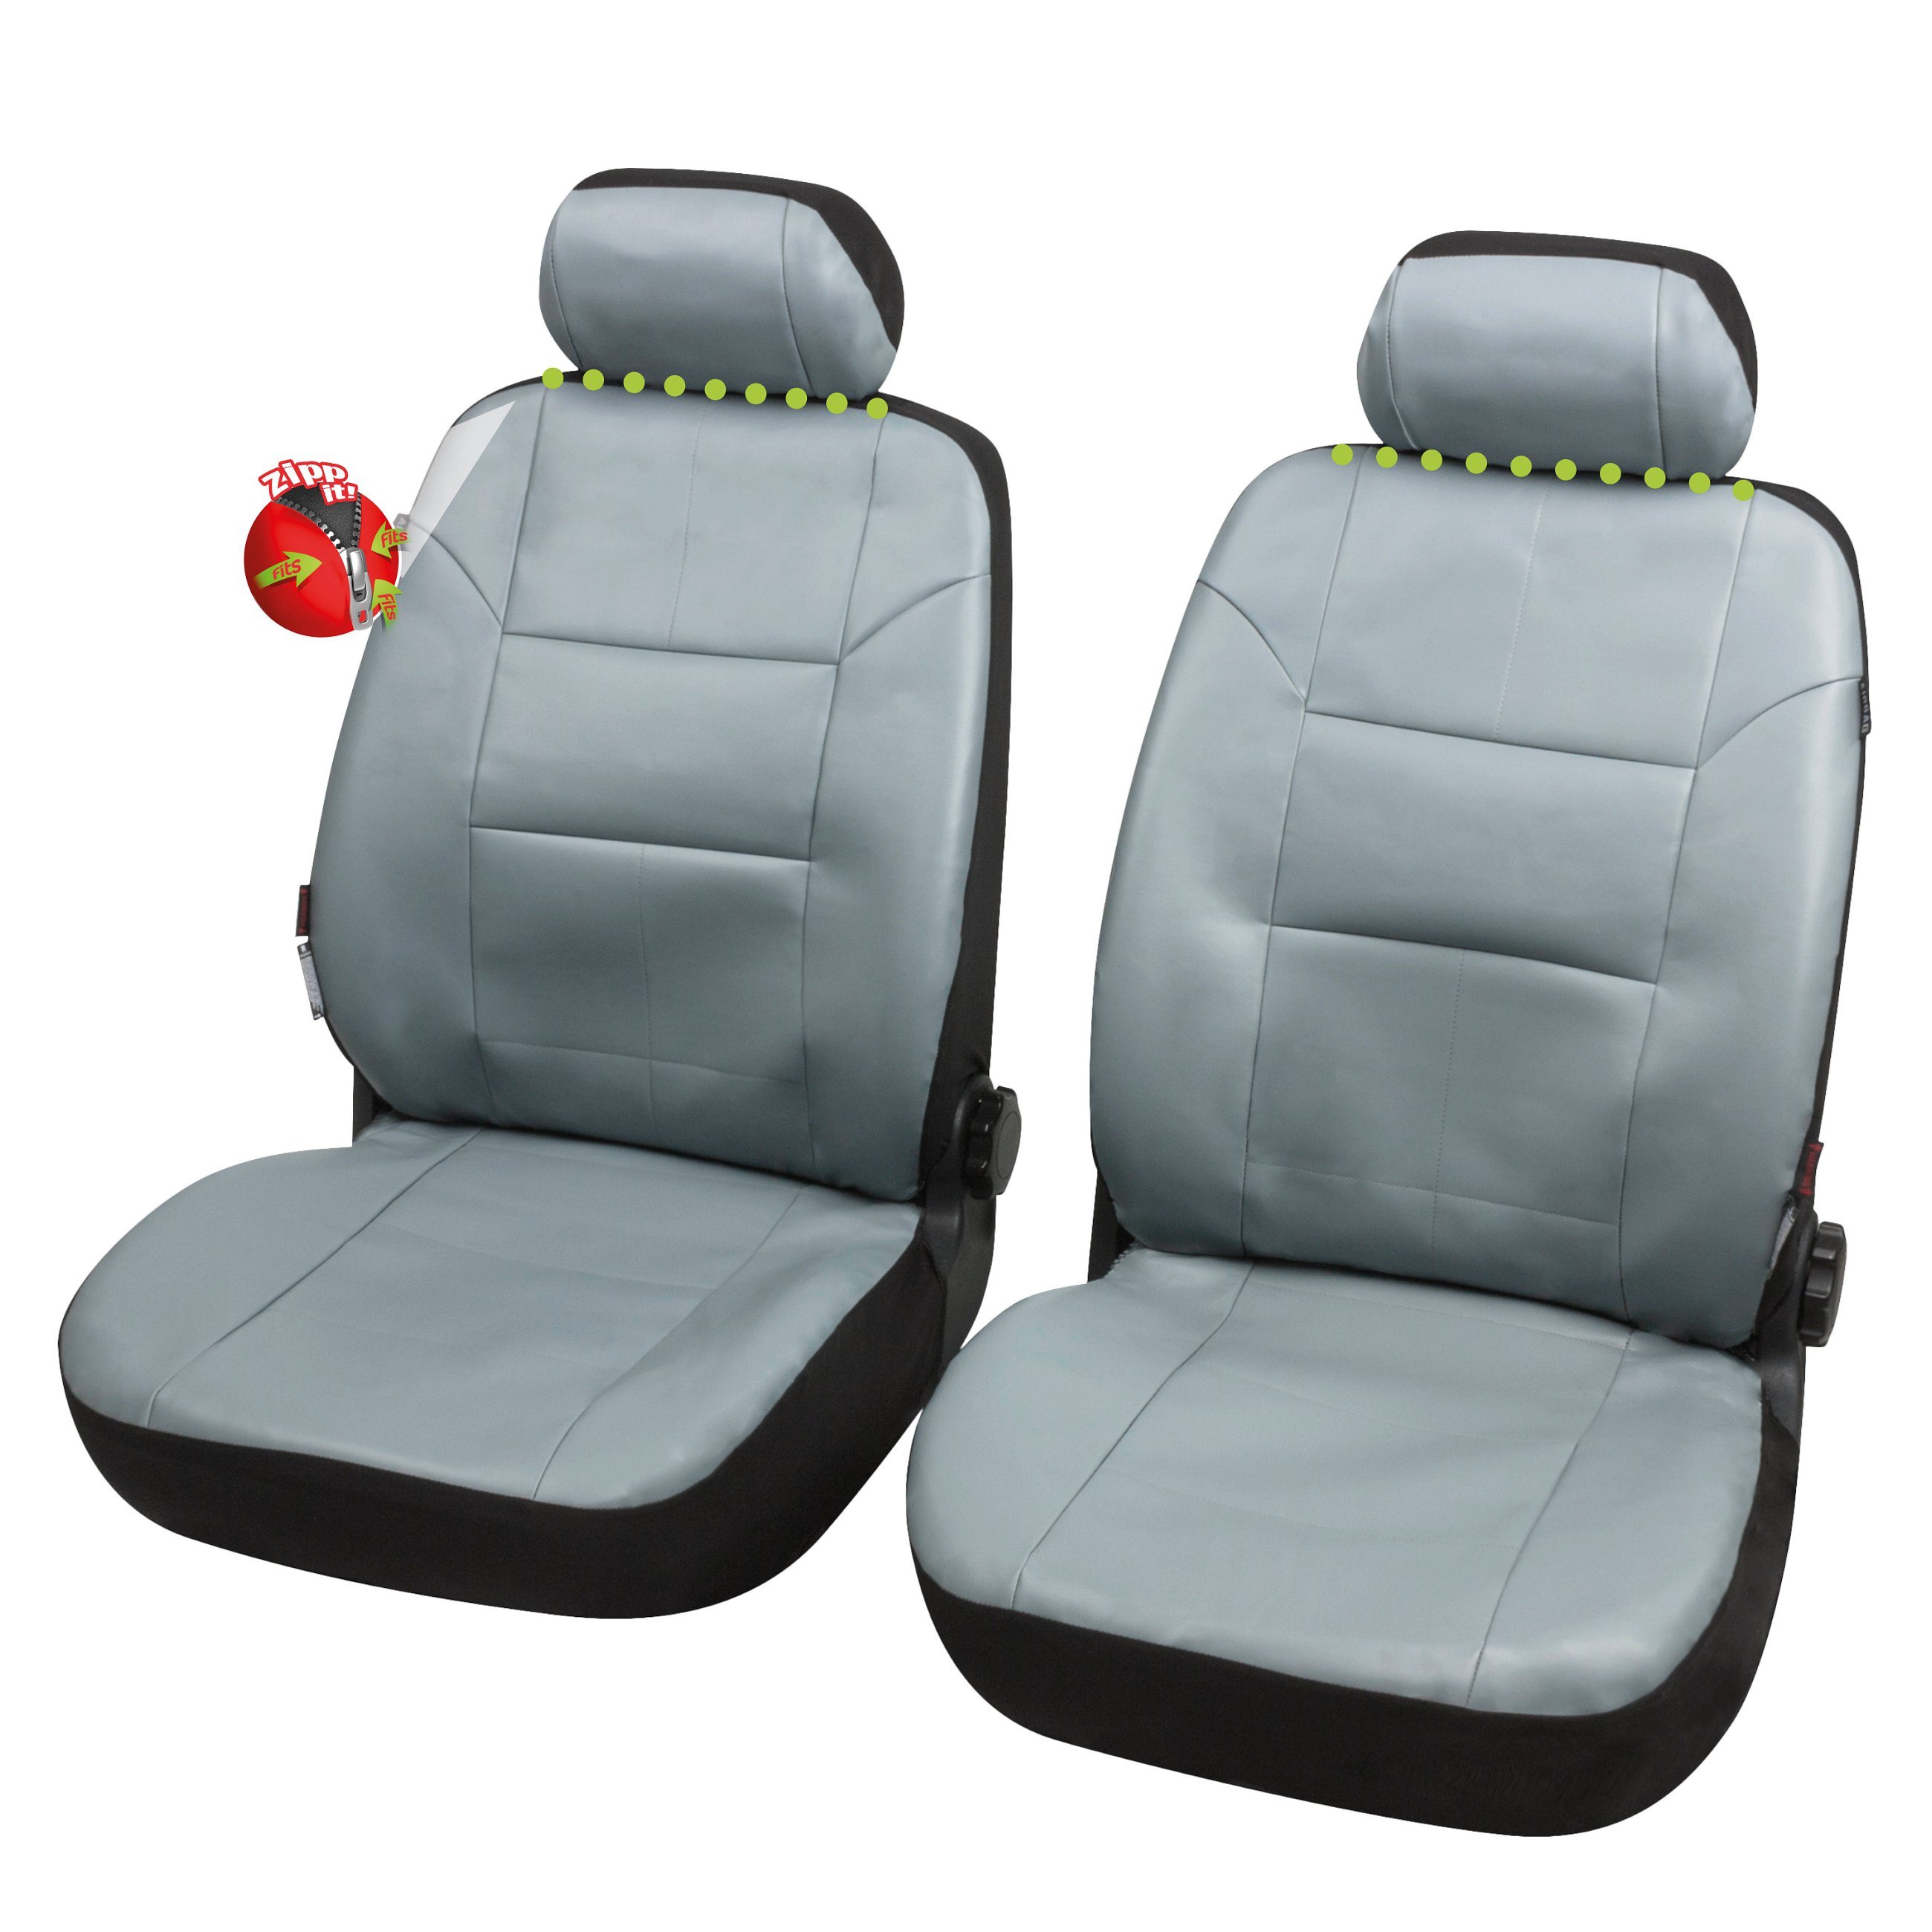 ZIPP IT Granada coprisedili auto per due sedili anteriori con sistema zip antracite